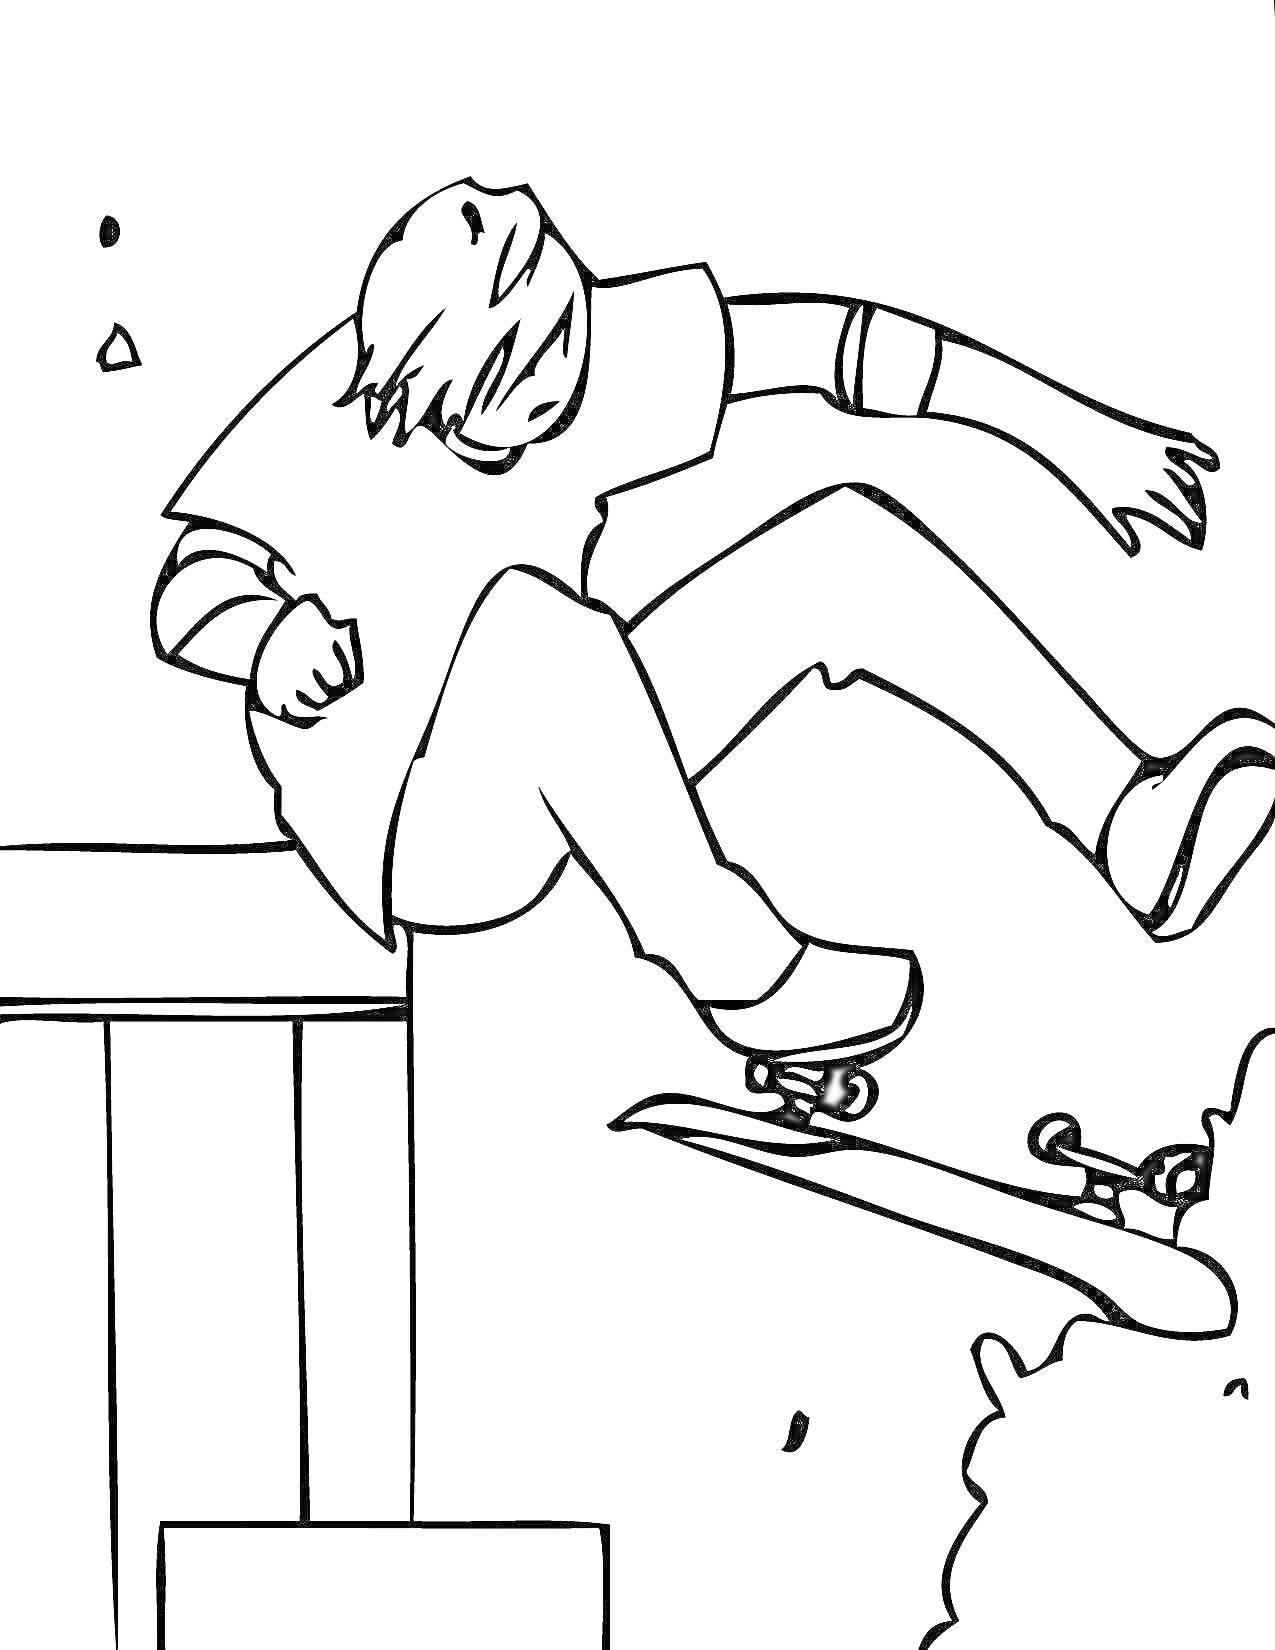 Скейтбордист в прыжке с перил